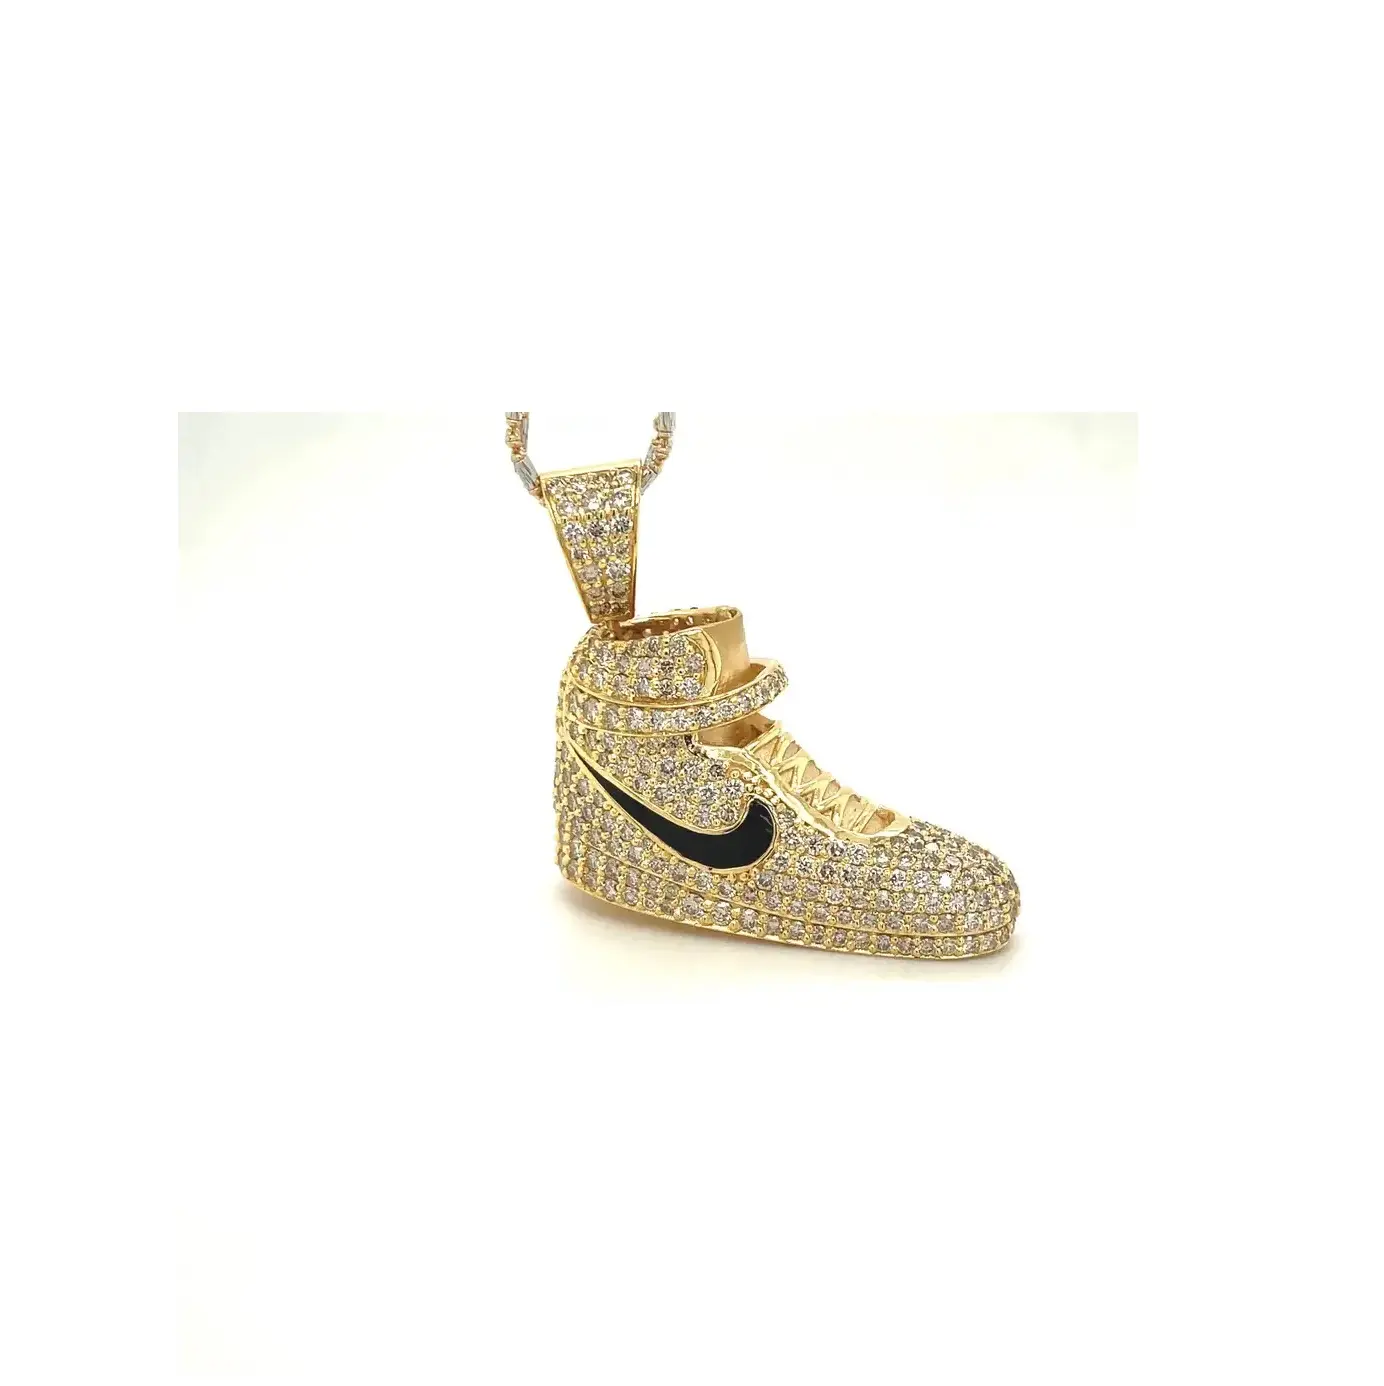 Yüksek talep ayakkabı şekli Hip Hop kolye ile 14k gerçek altın mevcut uygun fiyata lüks Hip Hop kolye